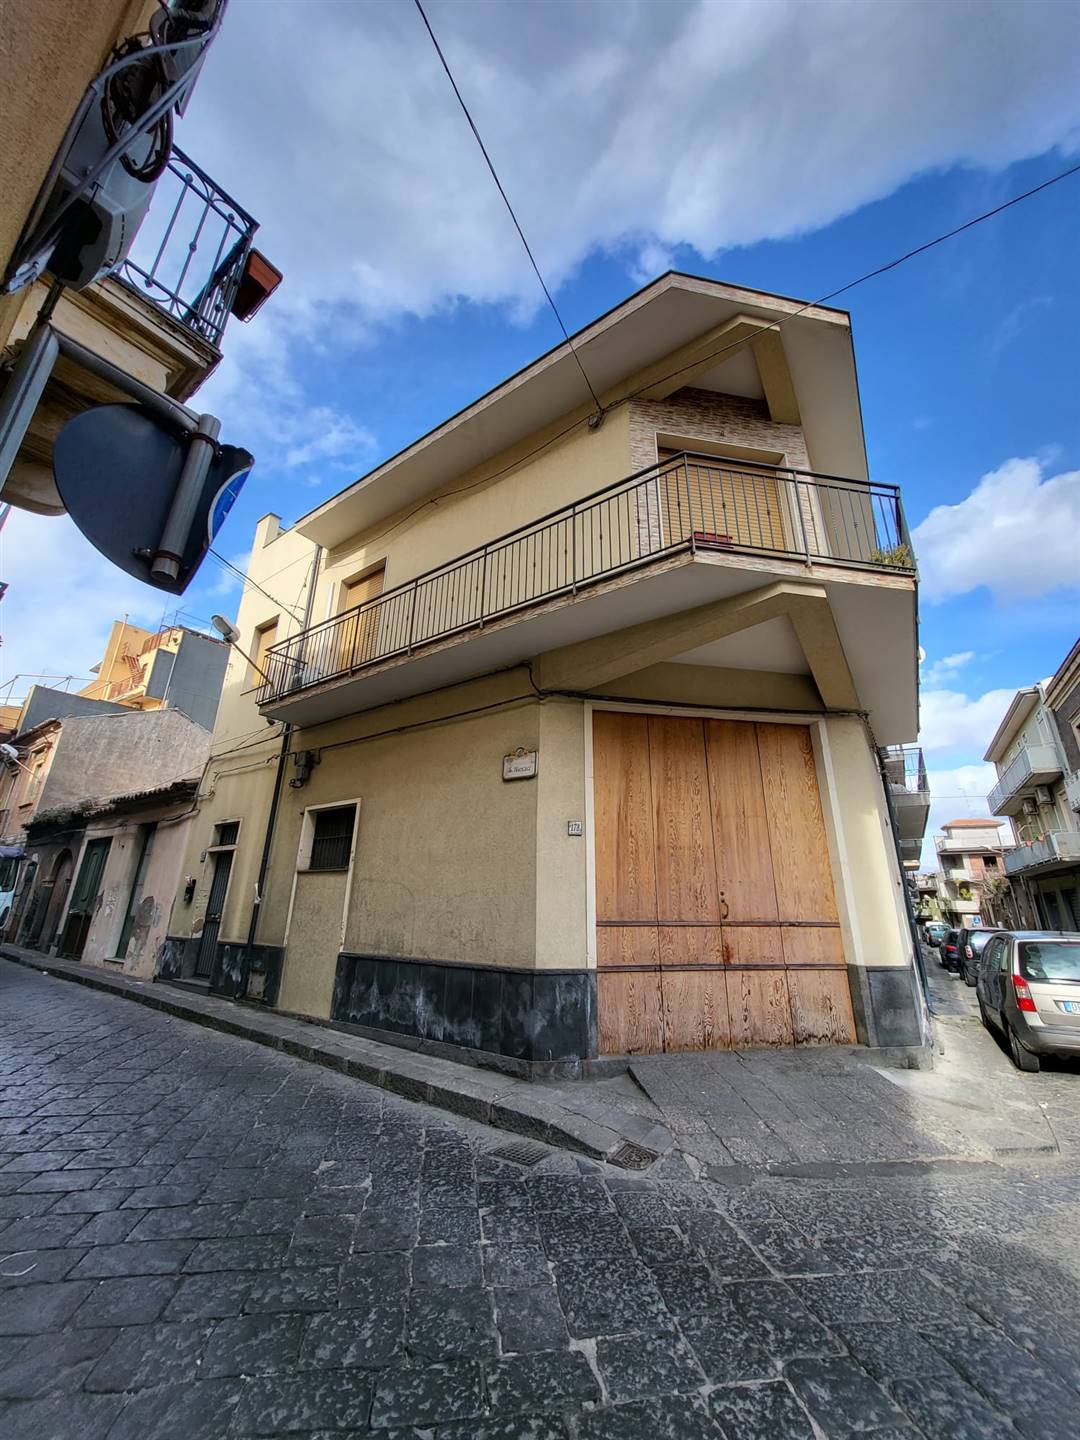 Appartamento in affitto a Misterbianco, 3 locali, prezzo € 500 | CambioCasa.it